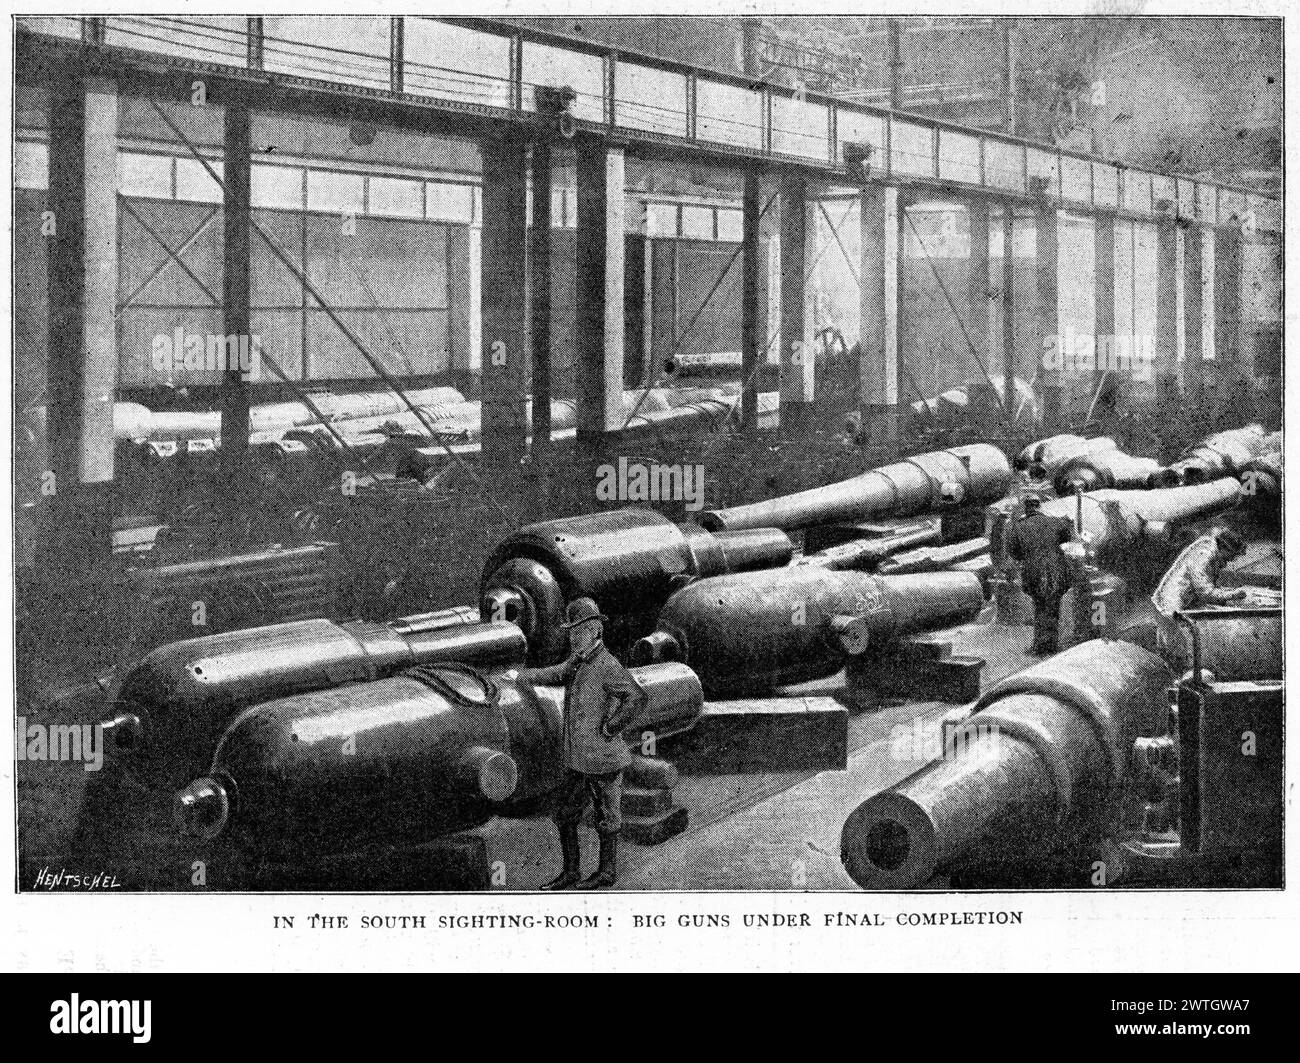 Große Geschütze im südlichen Sichtungsraum des Royal Arsenal, Woolwich im Südosten Londons, England, das für die Herstellung von Rüstungsgütern und Munition, für die Prüfung und Sprengstoffforschung für die britischen Streitkräfte verwendet wurde. Veröffentlicht um 1896. Stockfoto